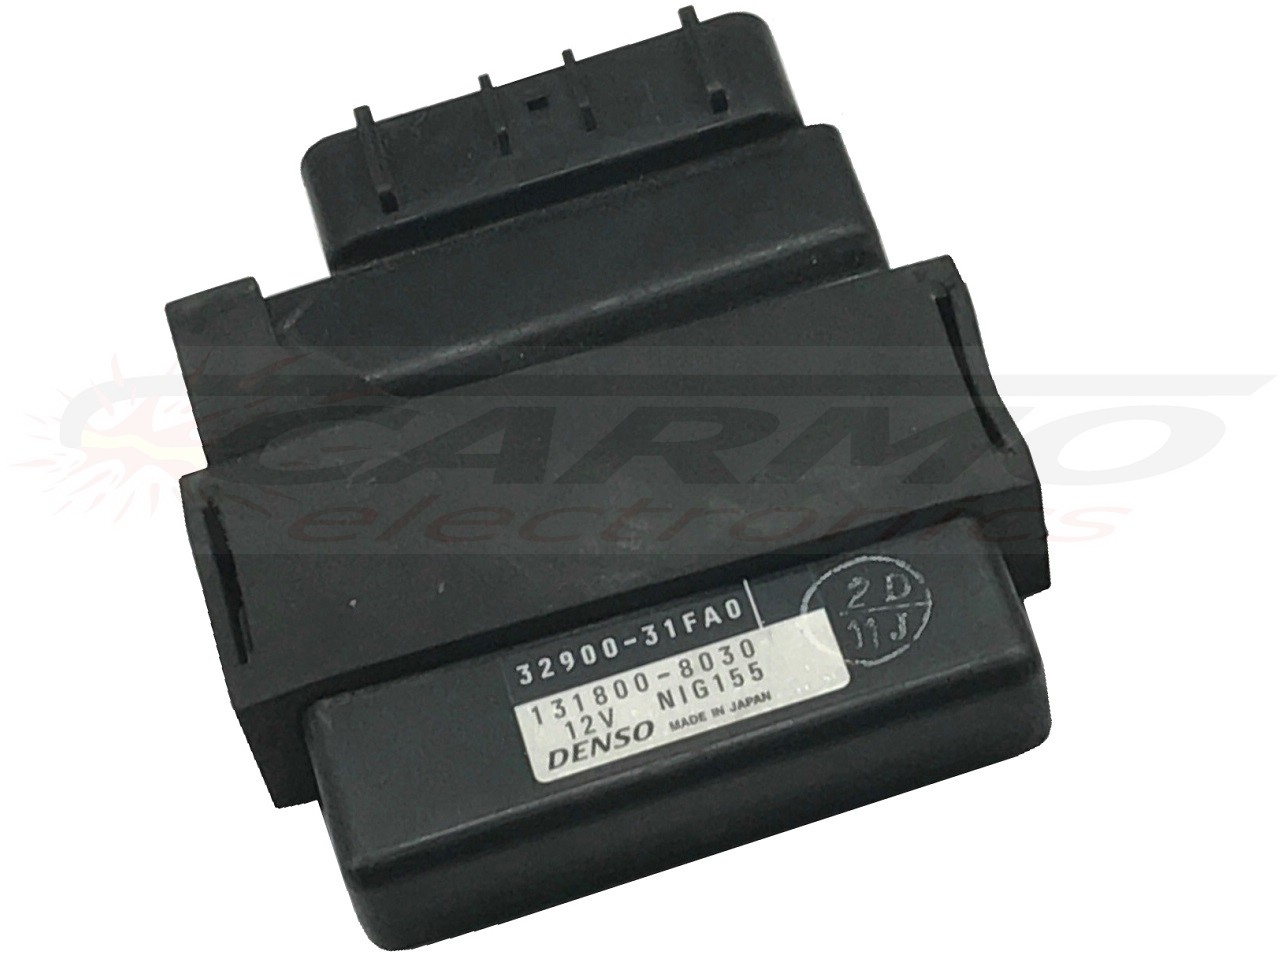 GSF600S TCI CDI dispositif de commande boîte noire (832900-31FAO, 131800-8030)